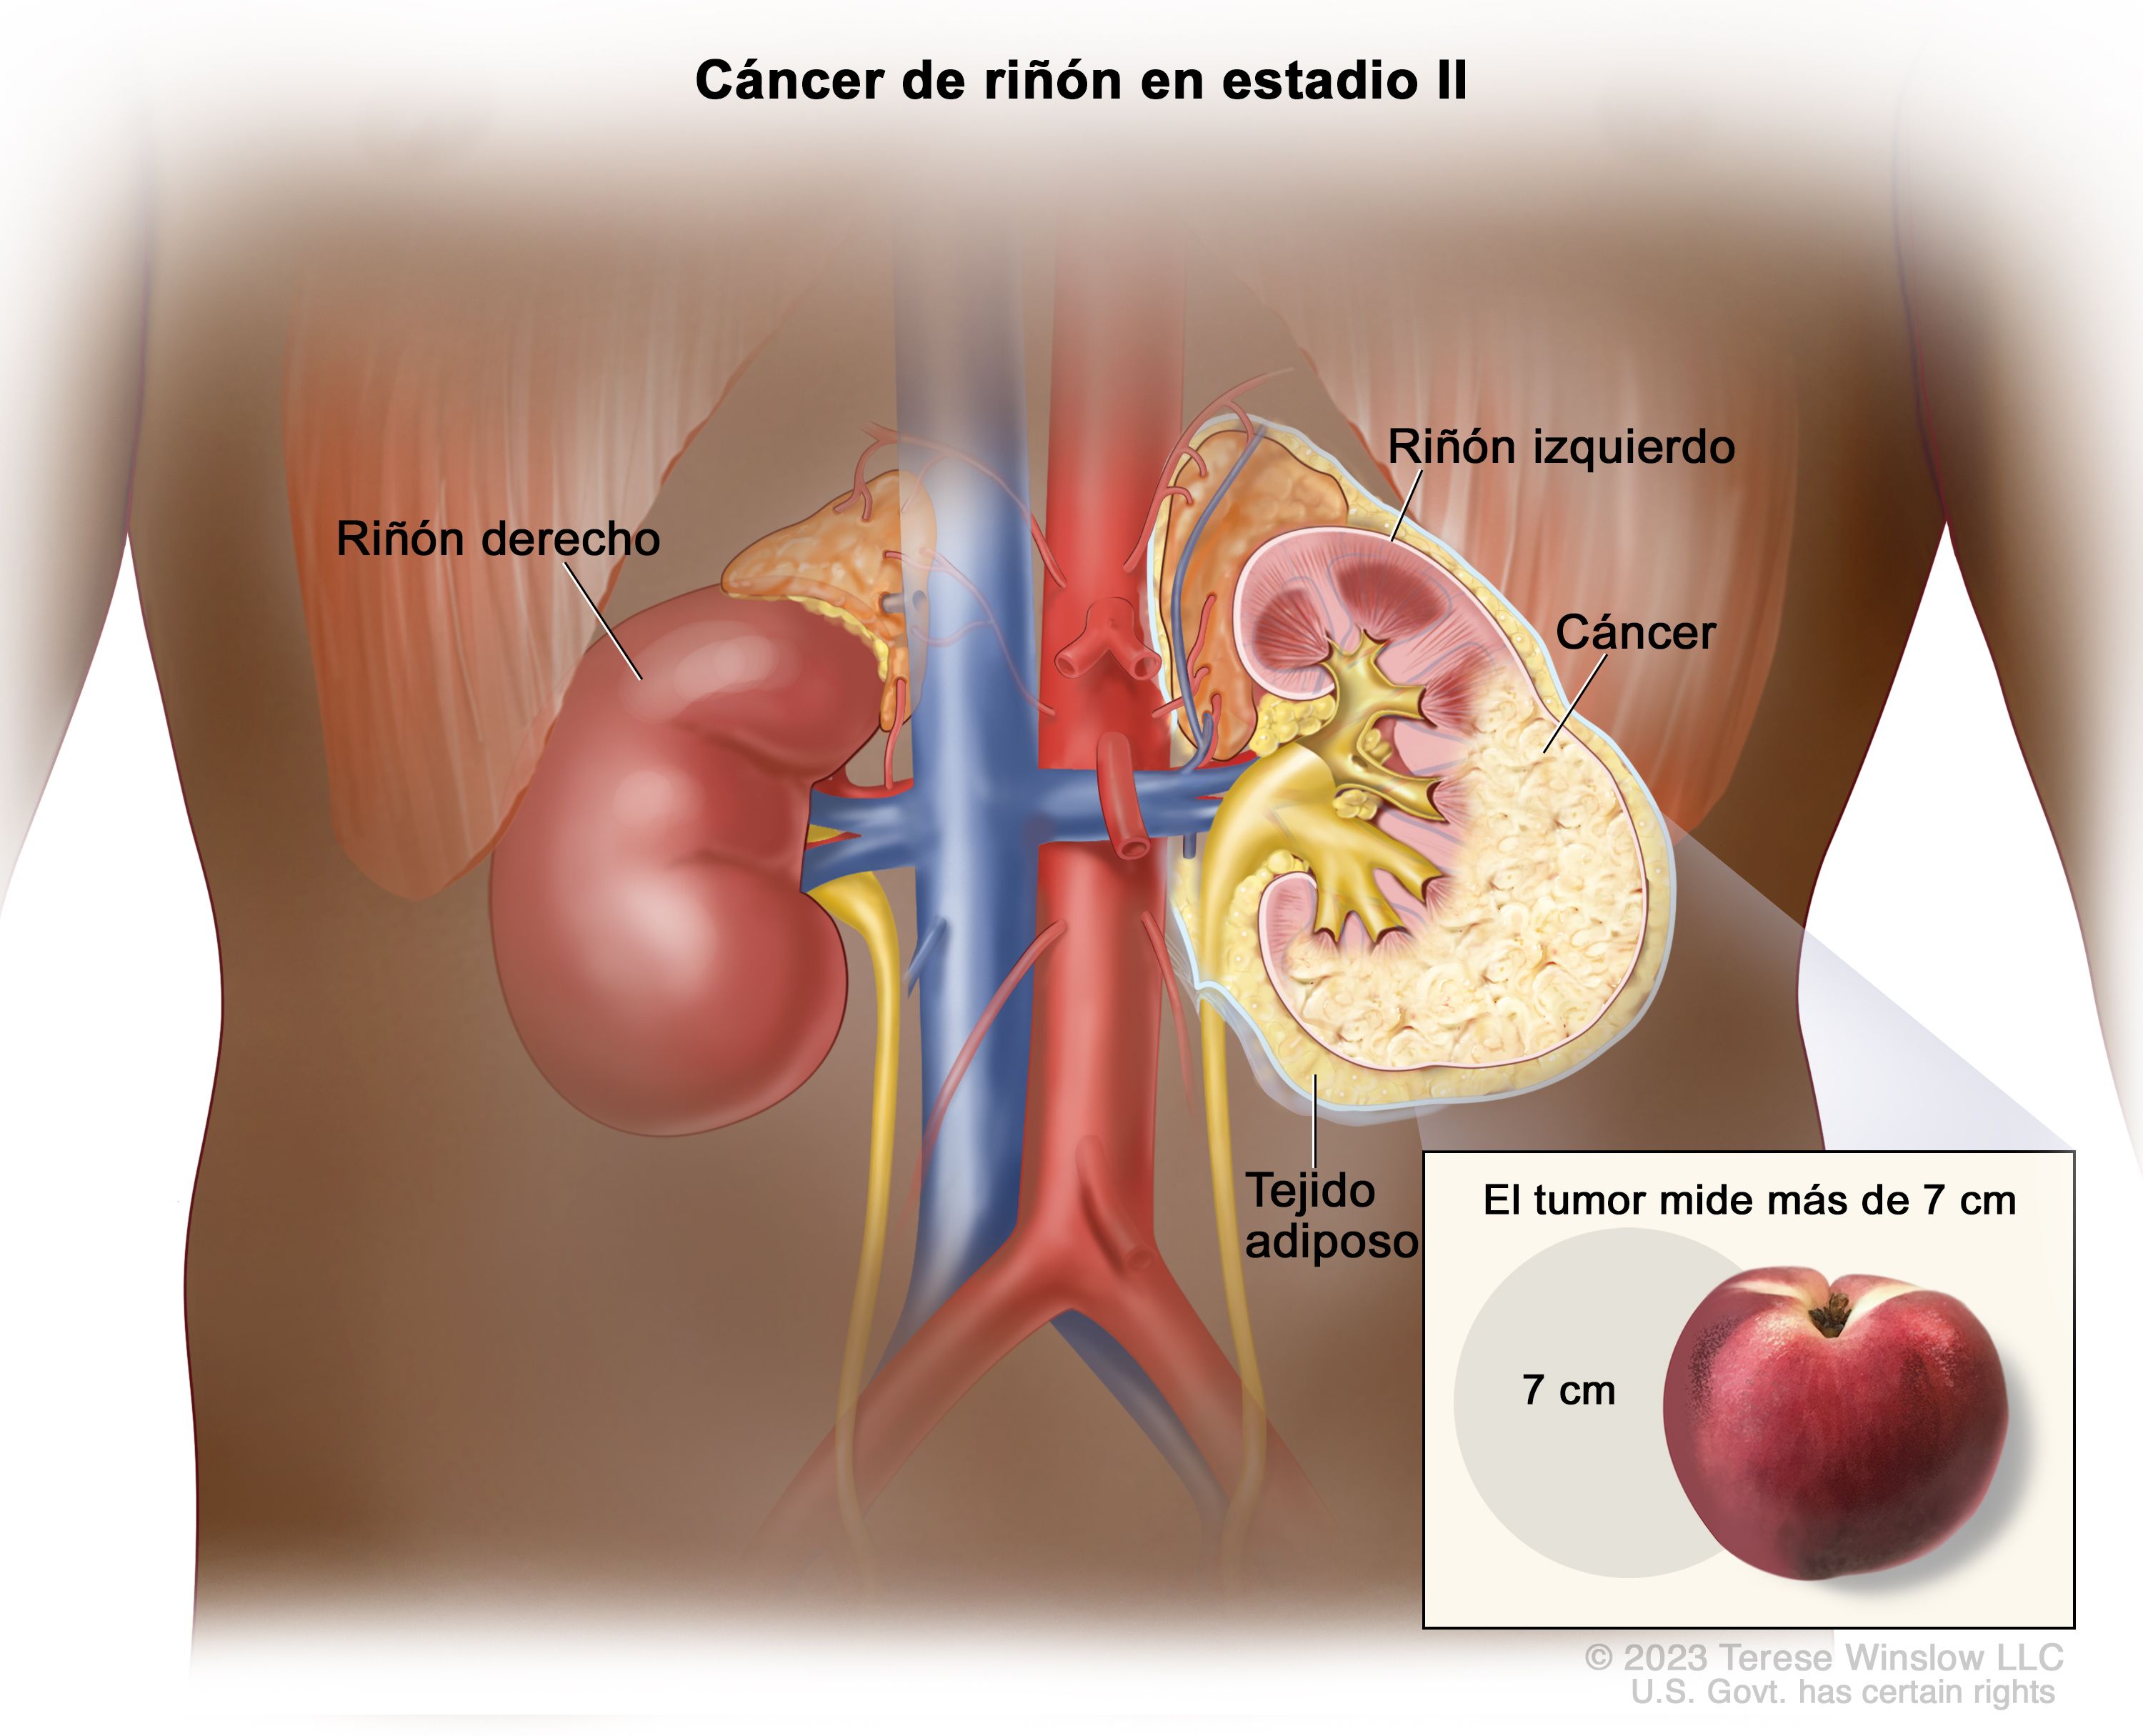 Definición de aparato urinario - Diccionario de cáncer del NCI - NCI